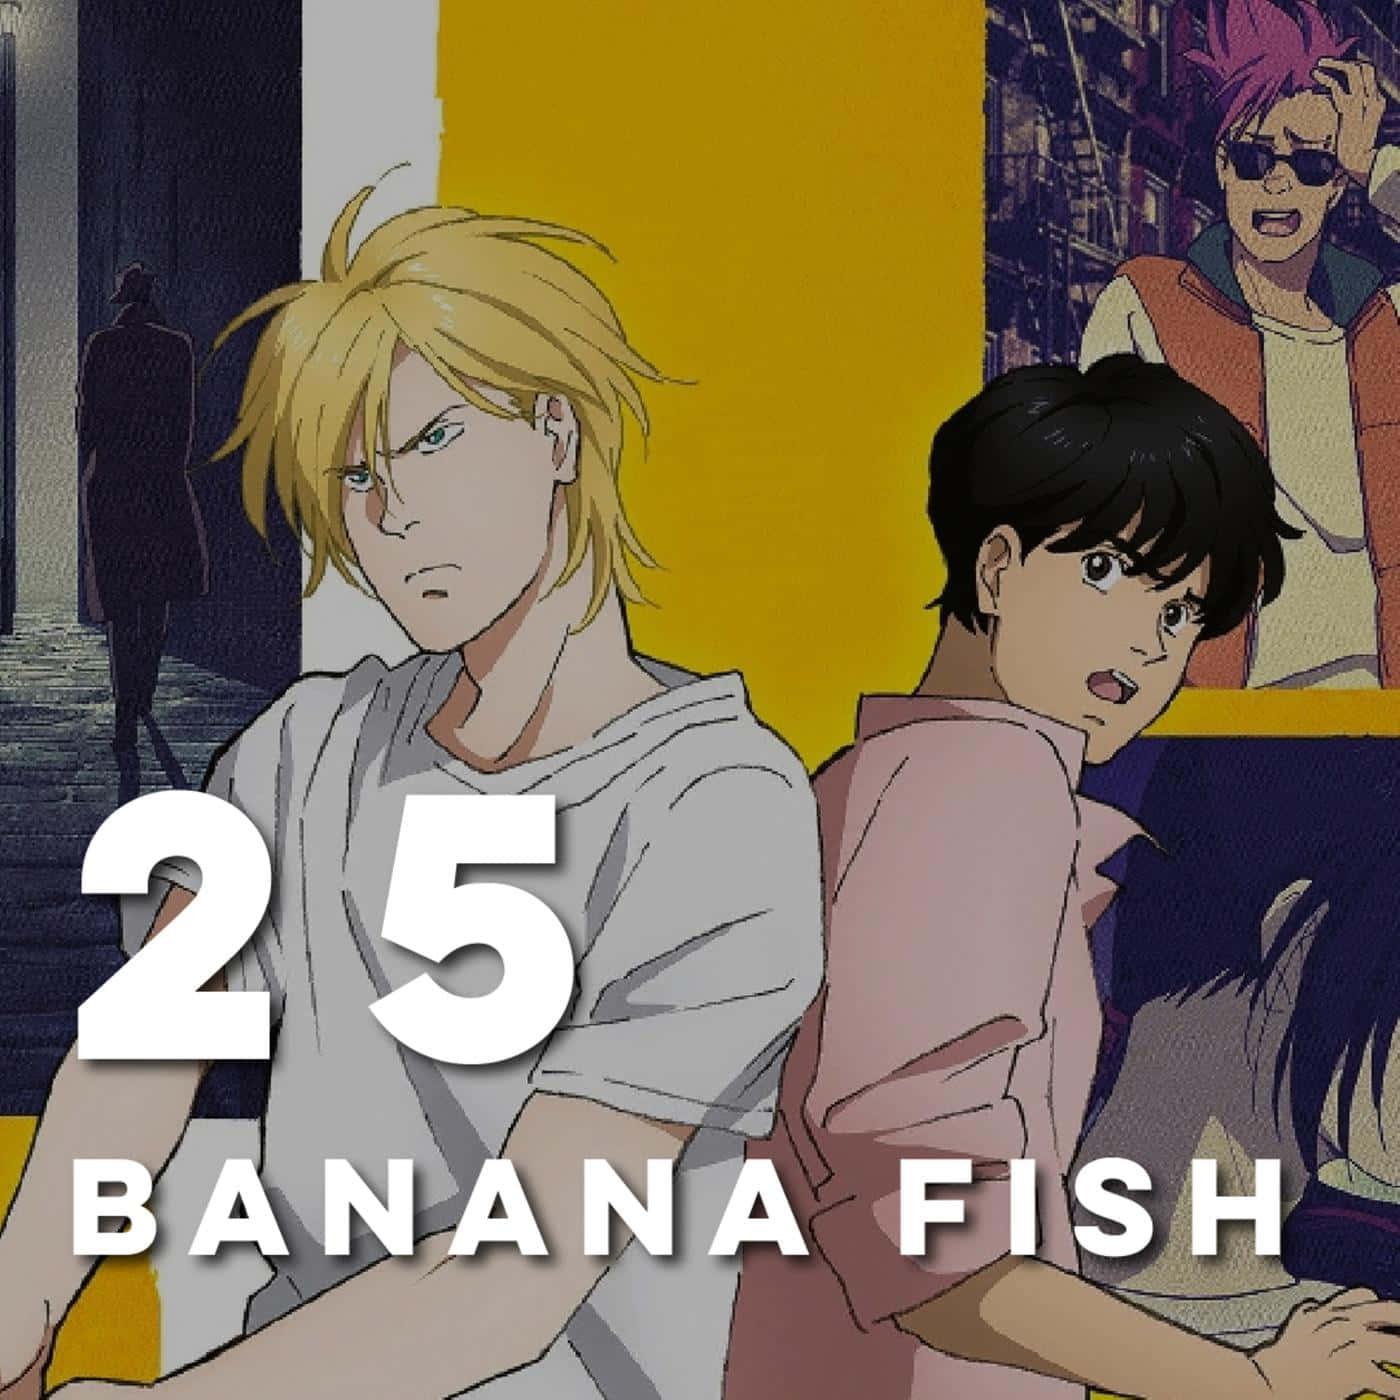 25banana Fish - Un Elenco Di Titoli Anime